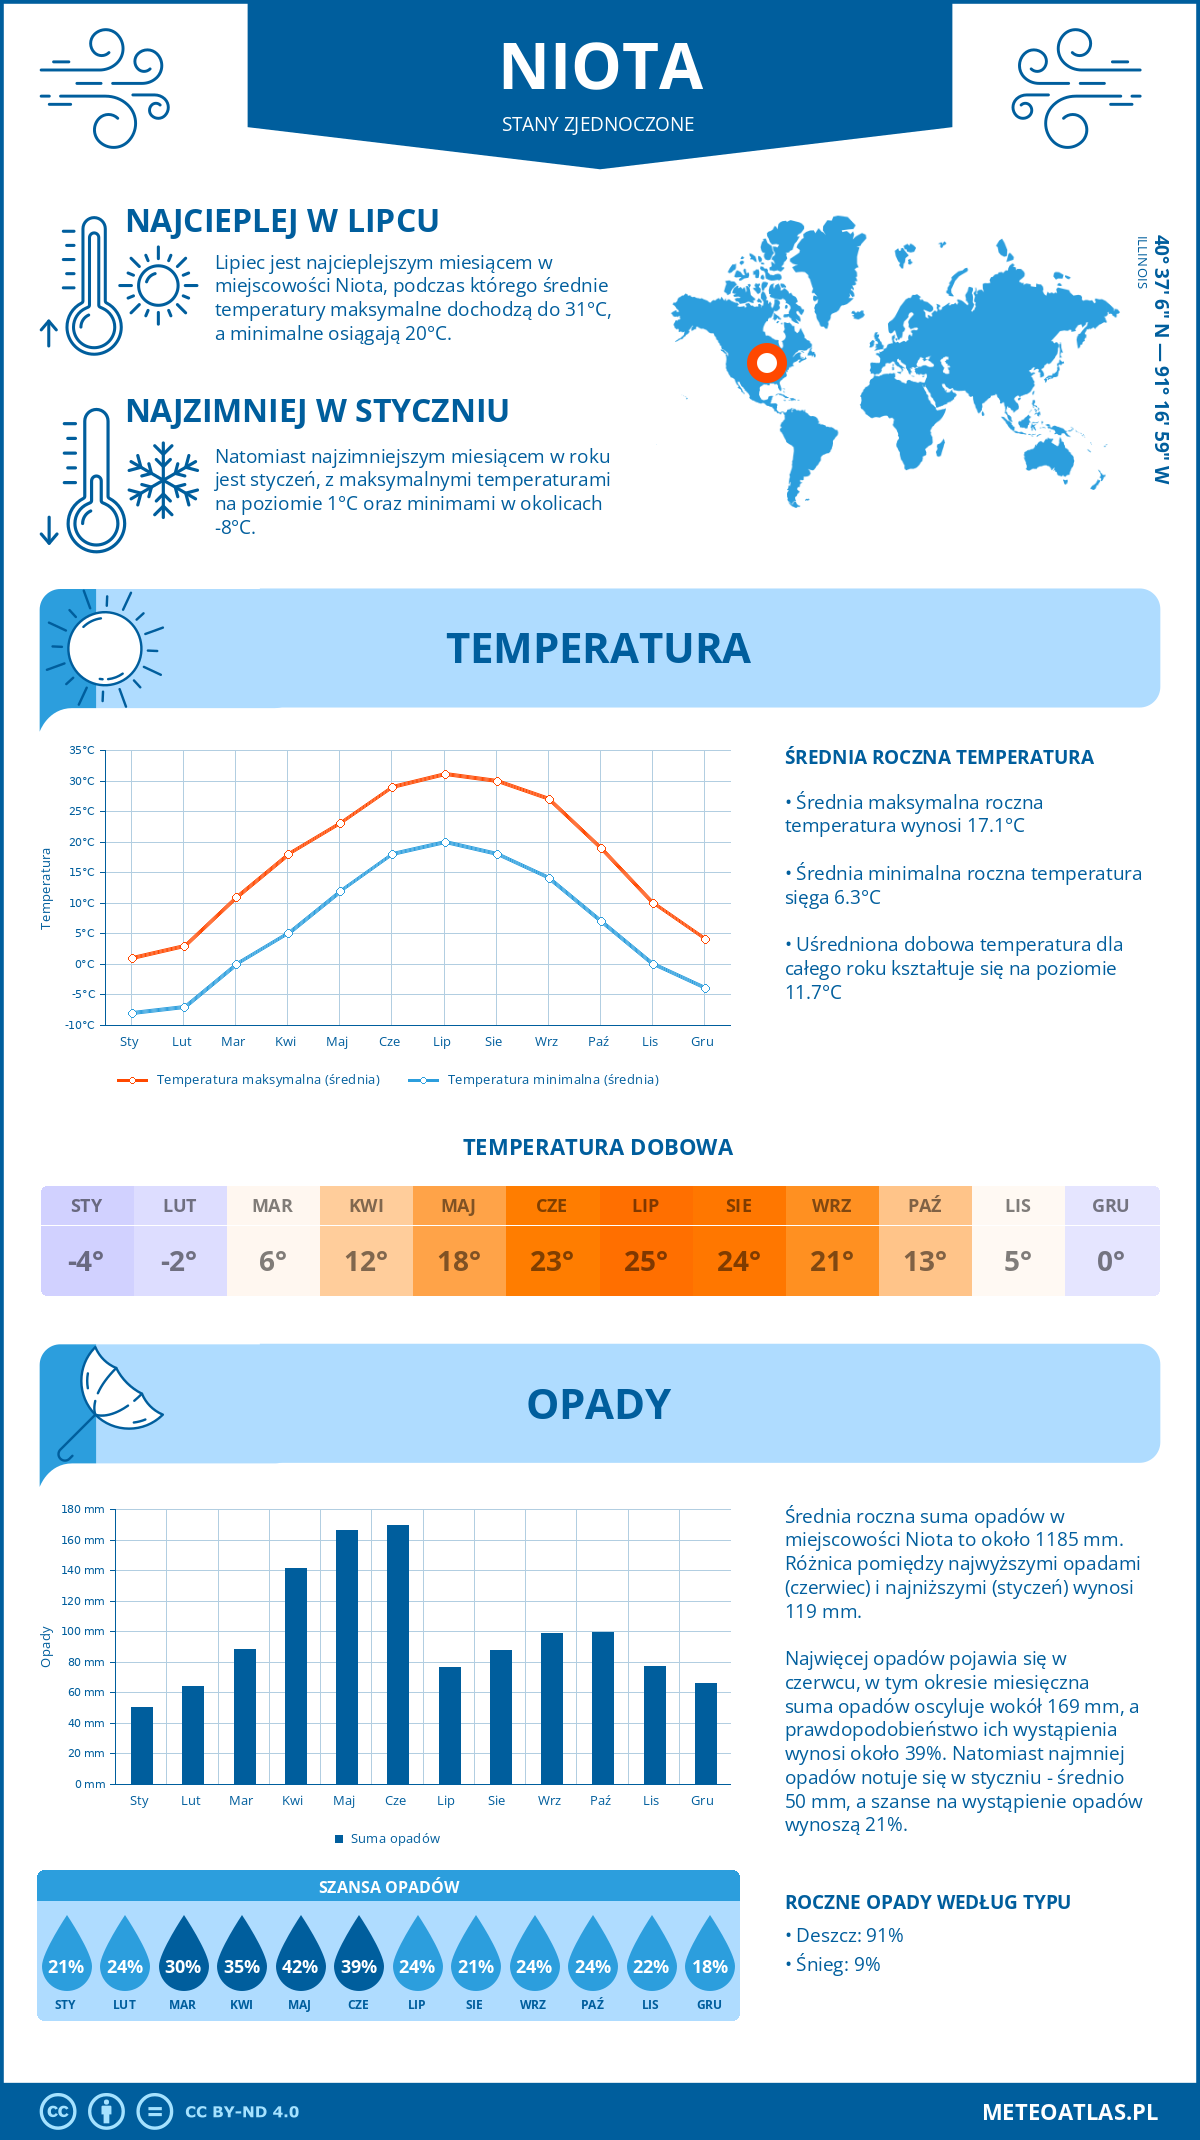 Pogoda Niota (Stany Zjednoczone). Temperatura oraz opady.